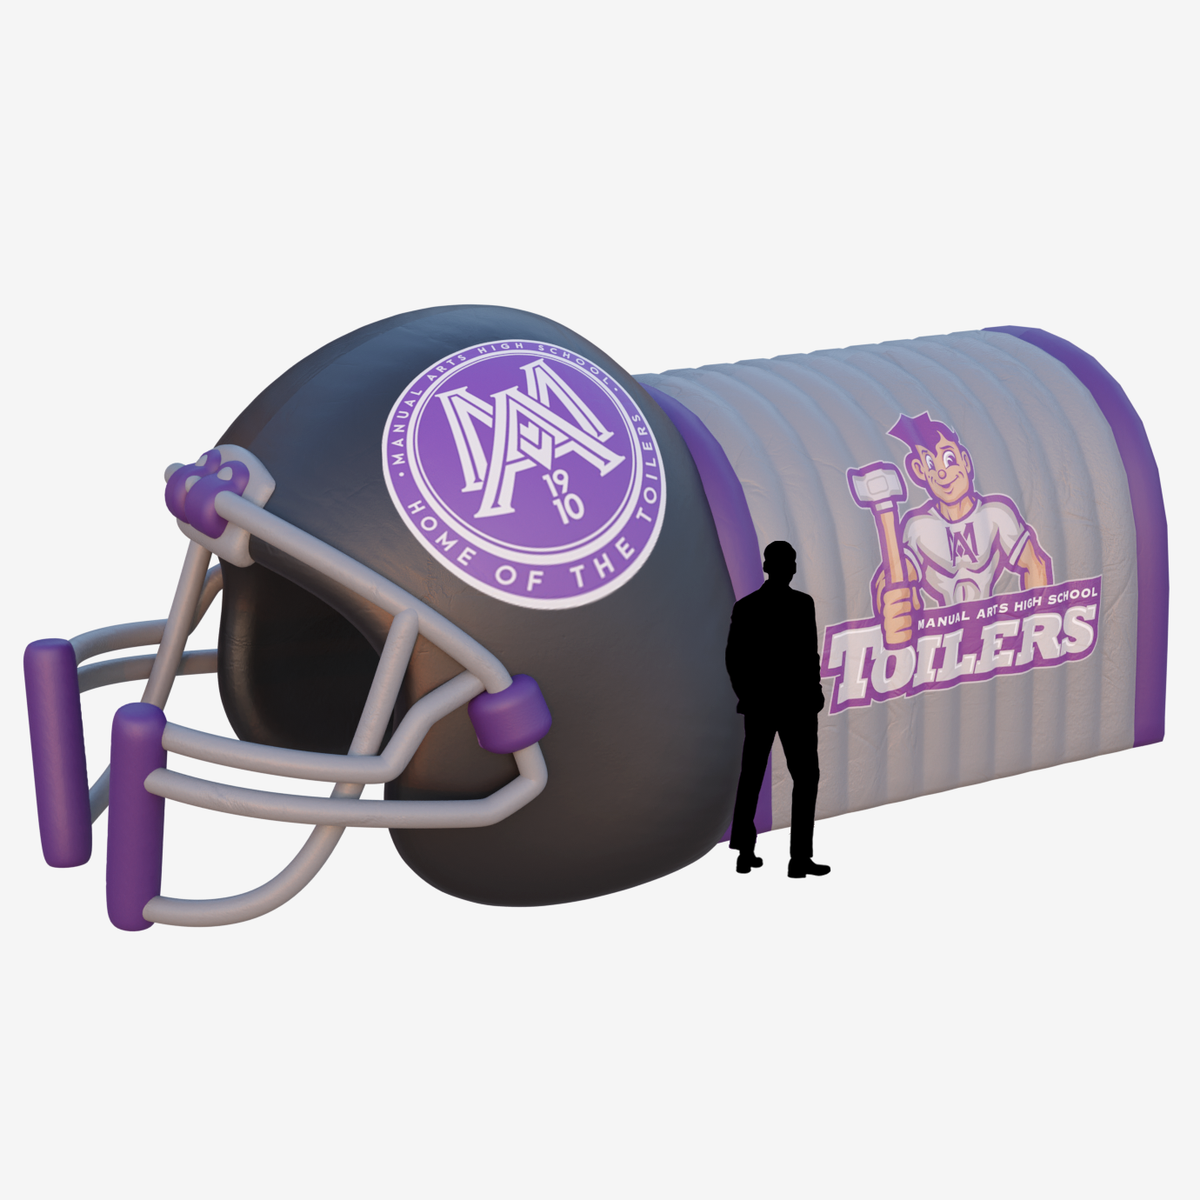 tollers tunnel helmet inflatable